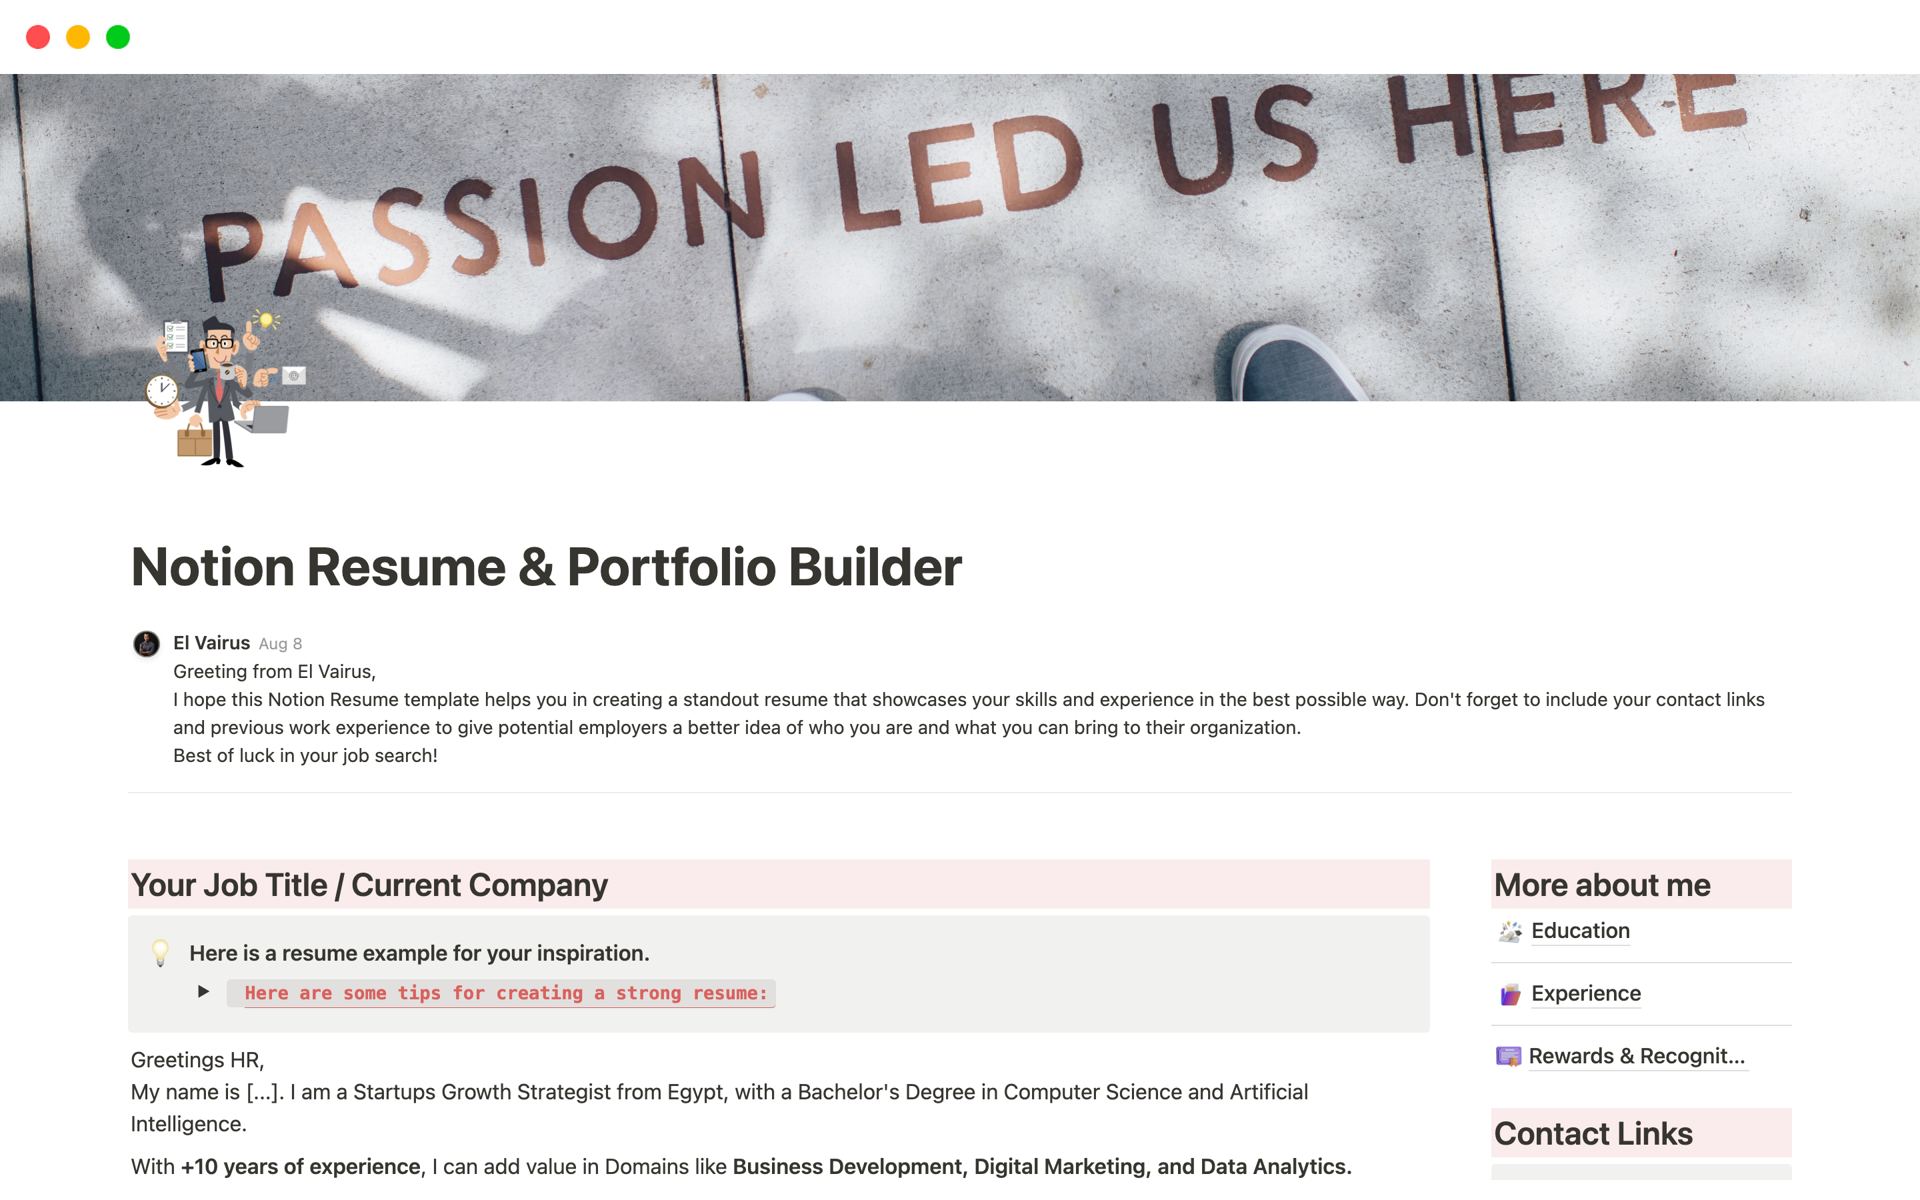 Notion Resume & Portfolio Builderのテンプレートのプレビュー